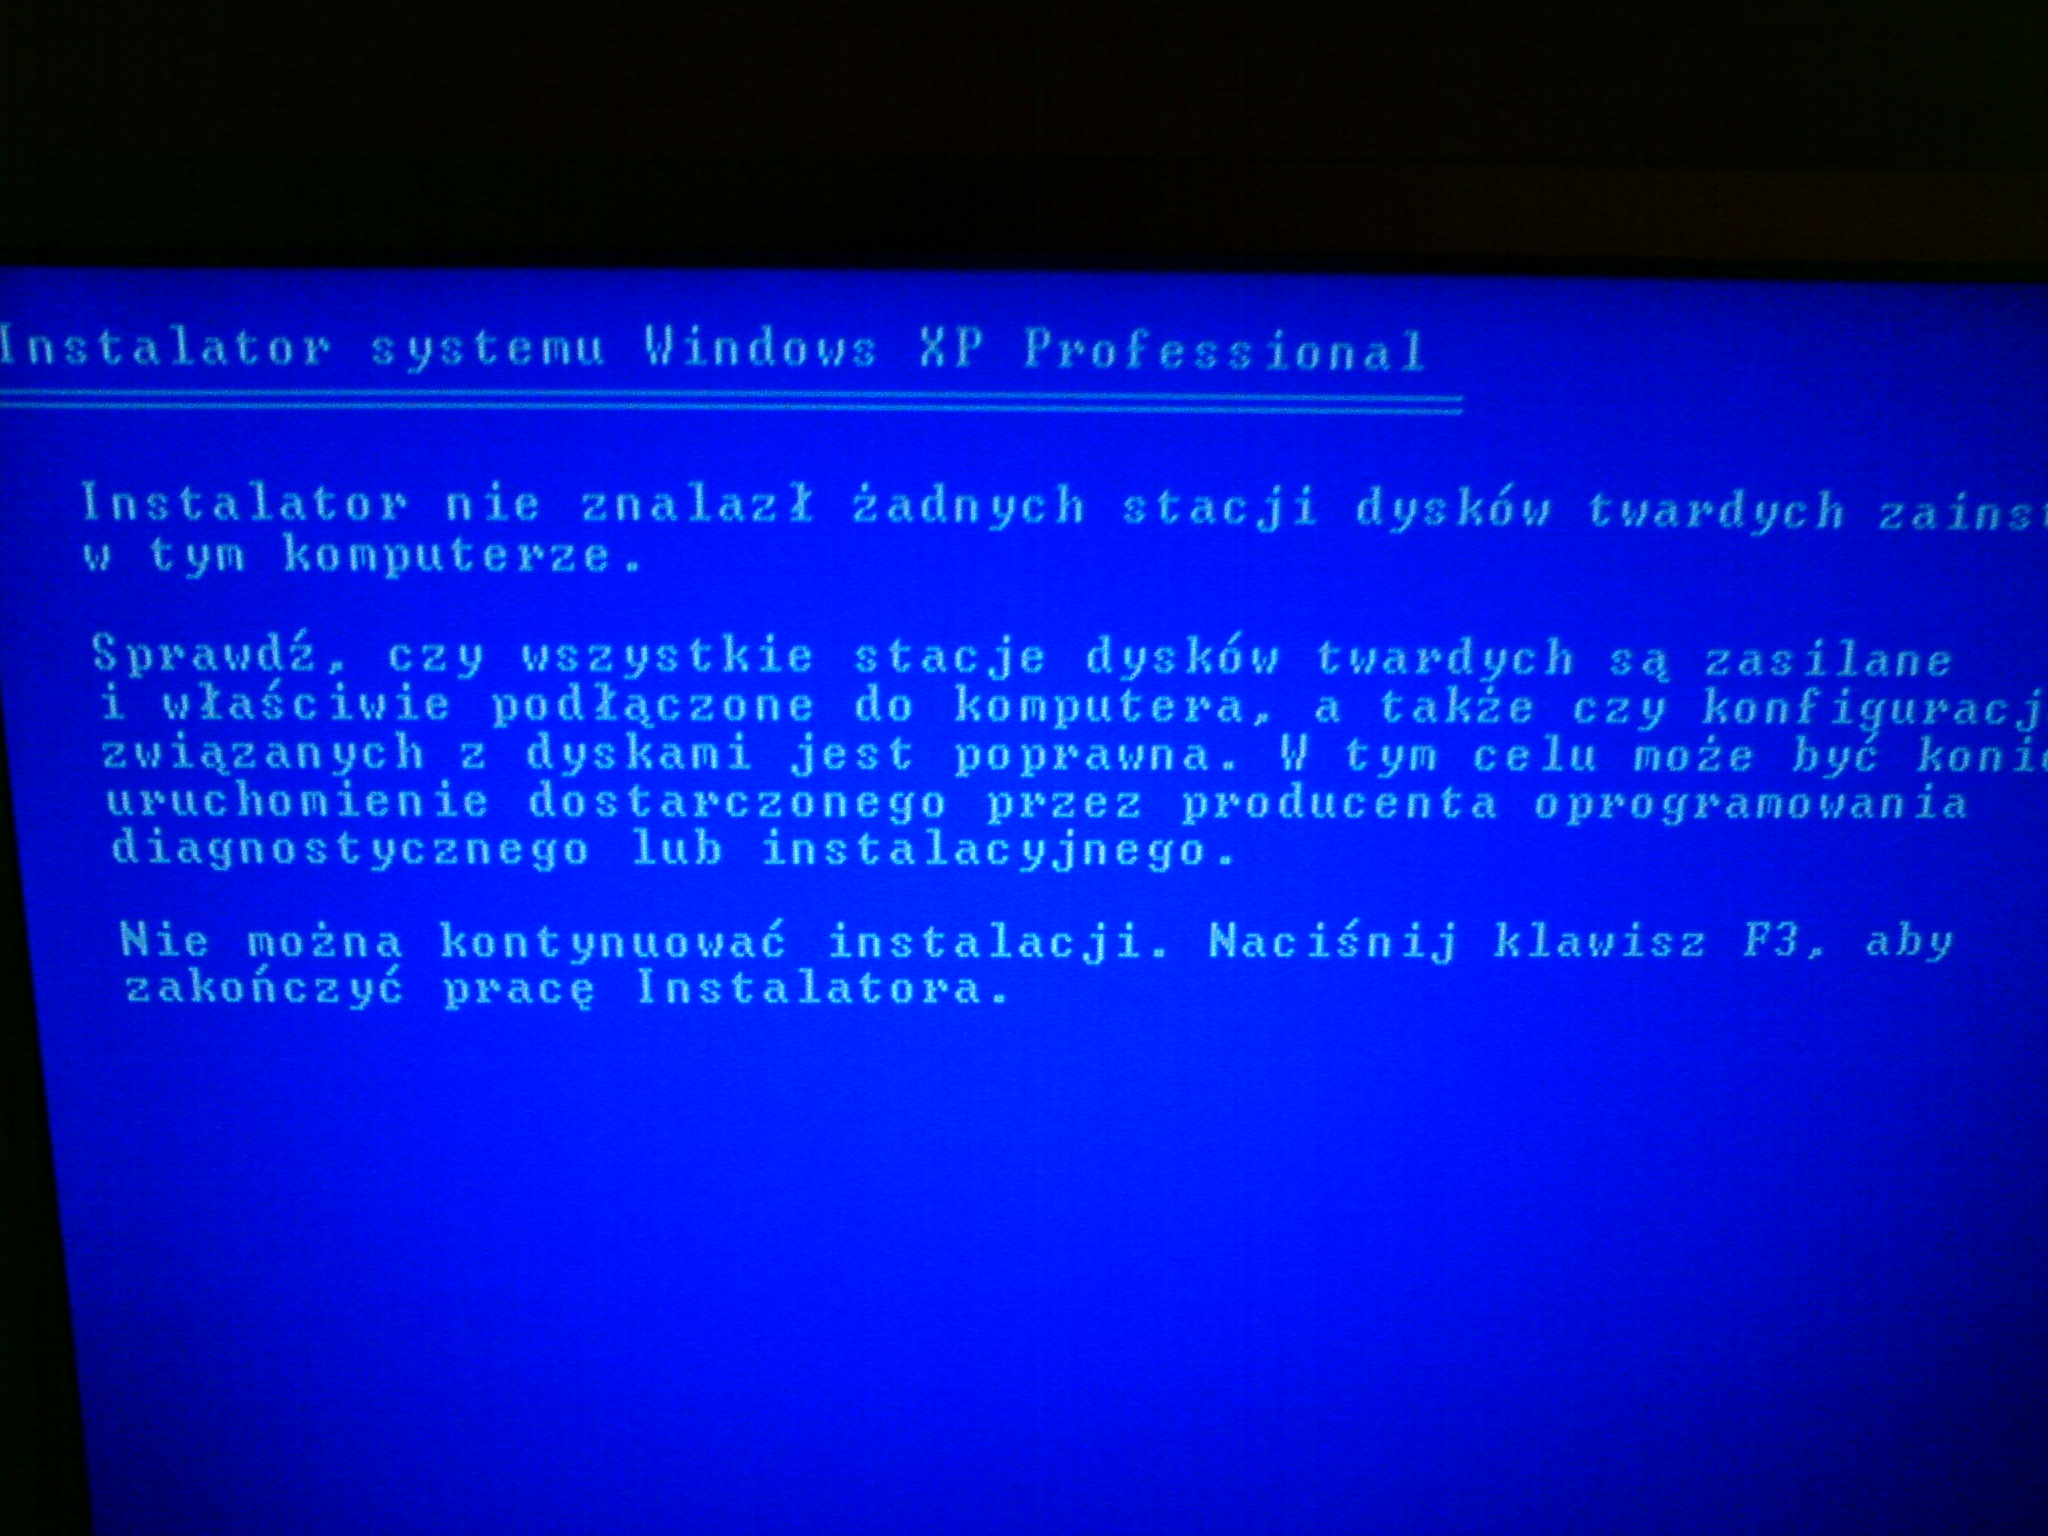 Синий экран 0000000050. Фуджицу ошибка 00.0. Коды ошибок синего экрана Windows XP 0х8а2558d0. Ошибка 0 0 655.